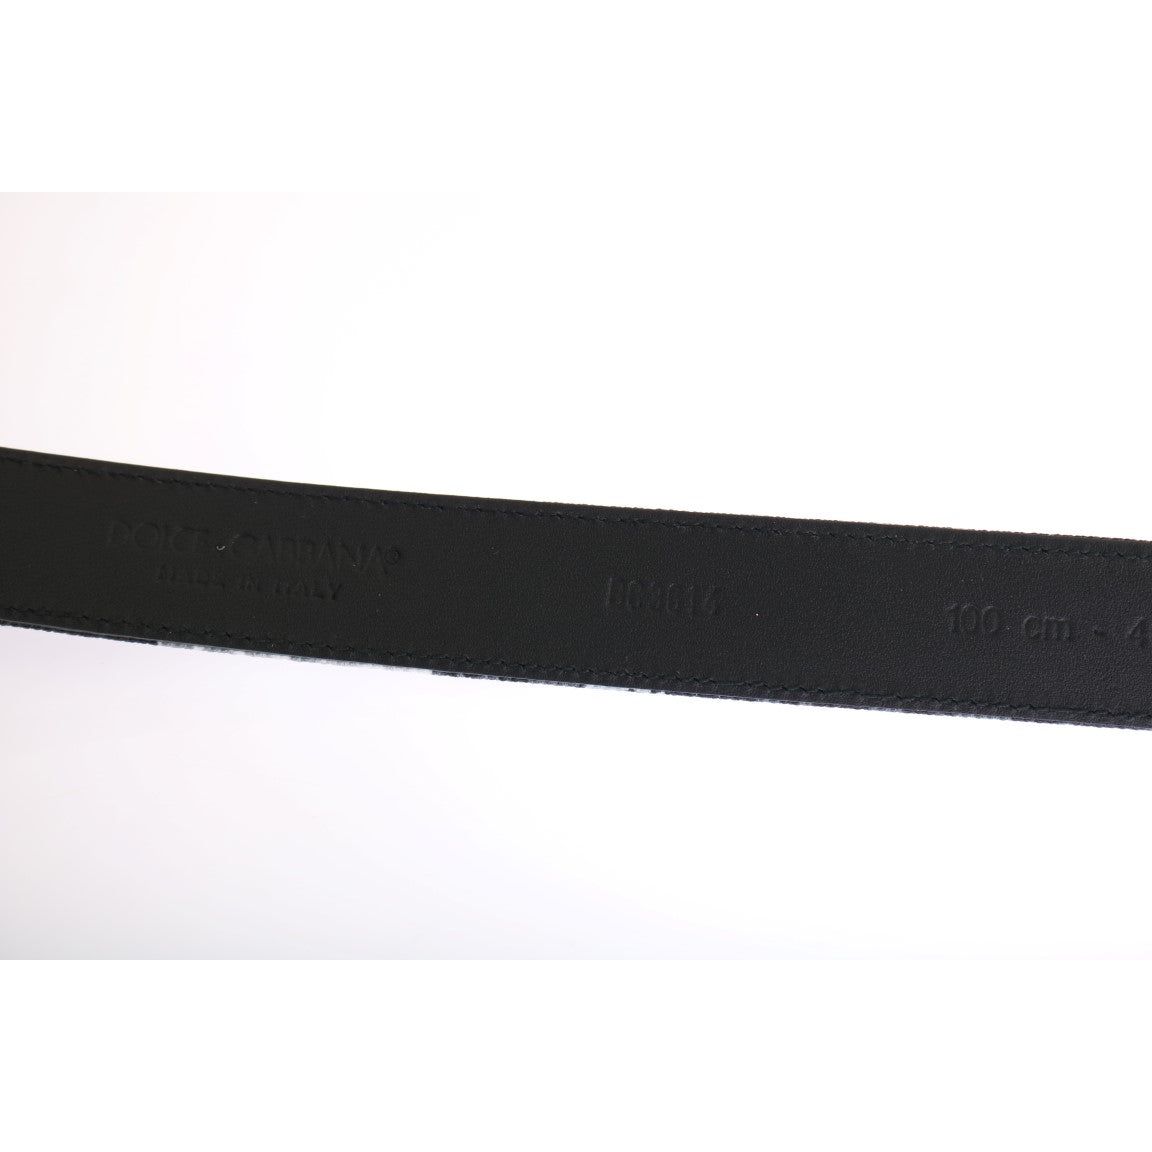 Dolce & Gabbana Elegant Floral Patterned Men's Luxury Belt Belt black-cayman-linen-leather-belt 456472-black-cayman-linen-leather-belt-3.jpg